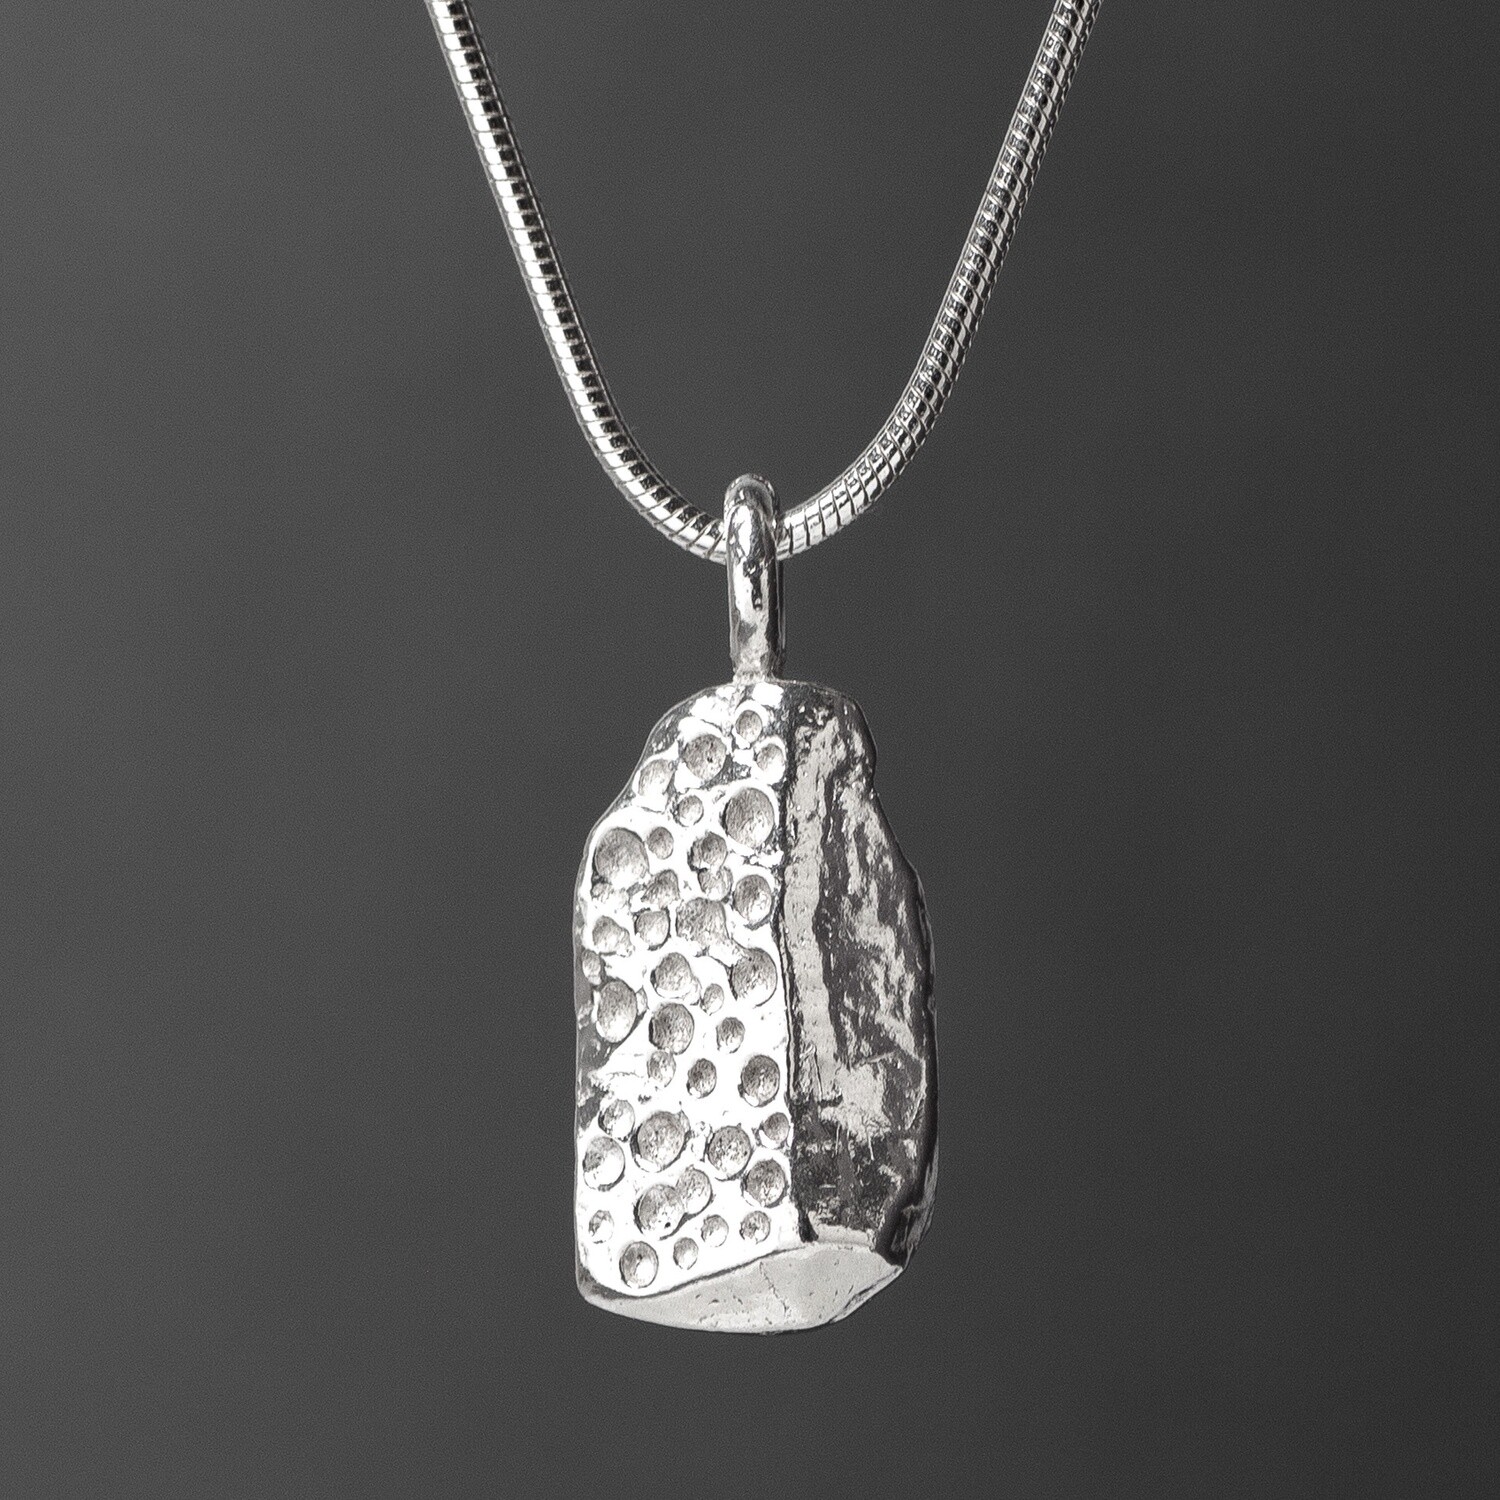 Bachwen Silver Pendant by Silverfish